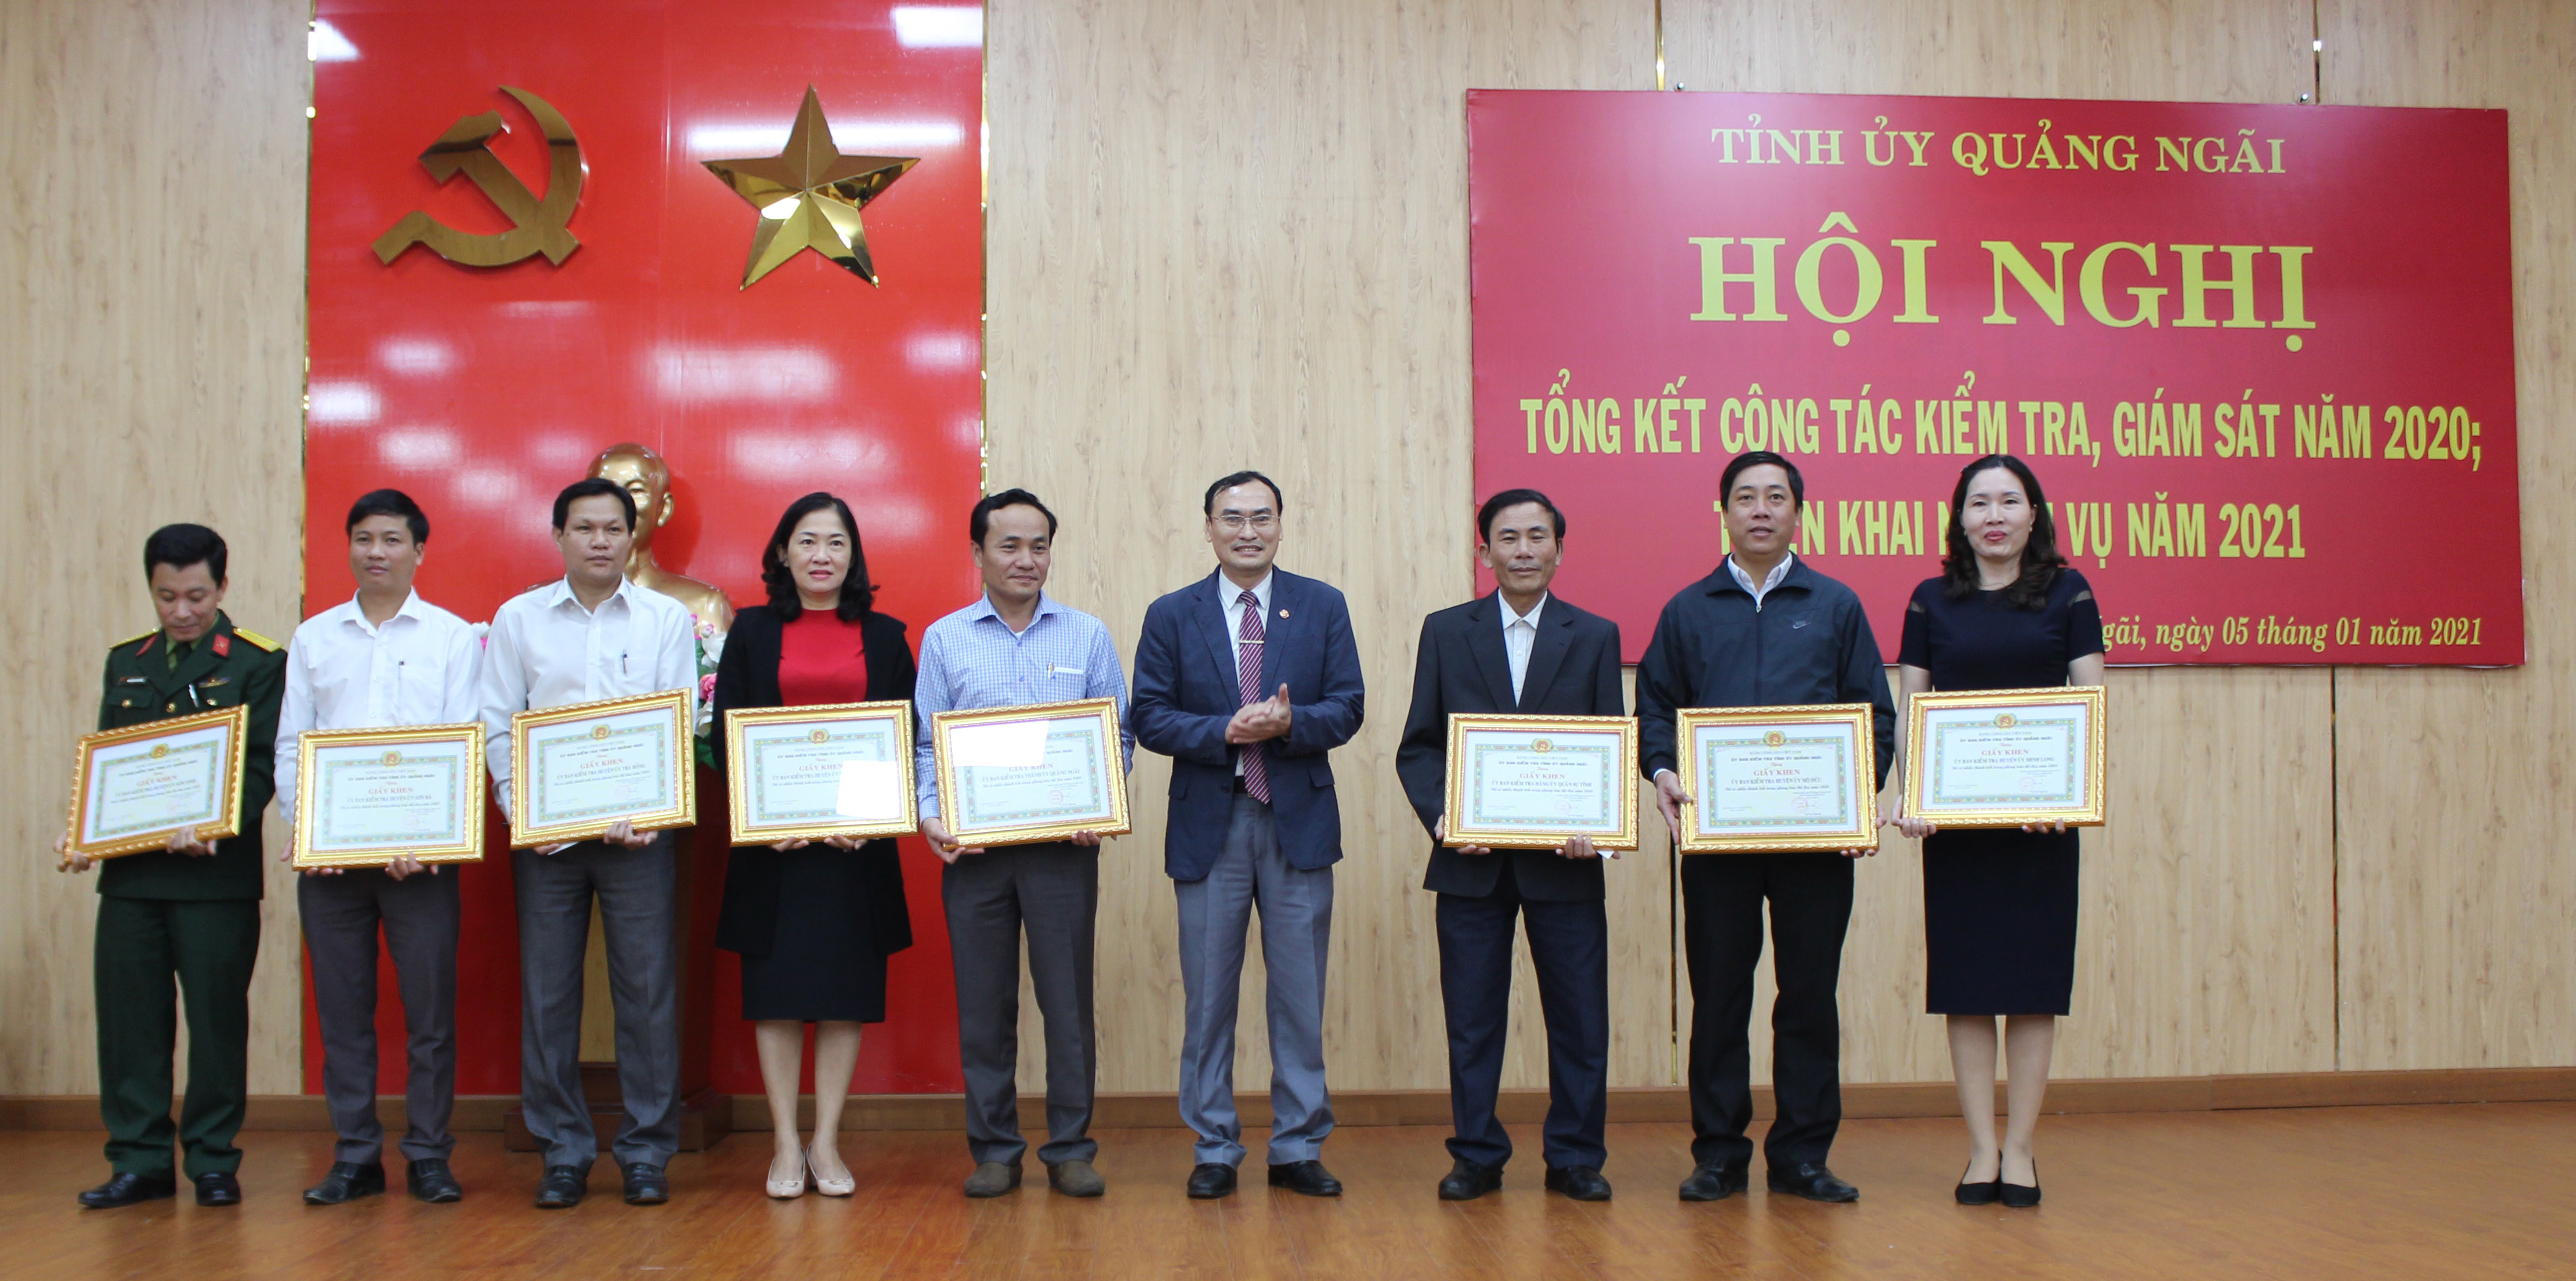 Các tập thể, cá nhân có thành tích xuất sắc trong công tác kiểm tra, giám sát năm 2020 được UBKT Tỉnh ủy Quảng Ngãi tuyên dương, khen thưởng.